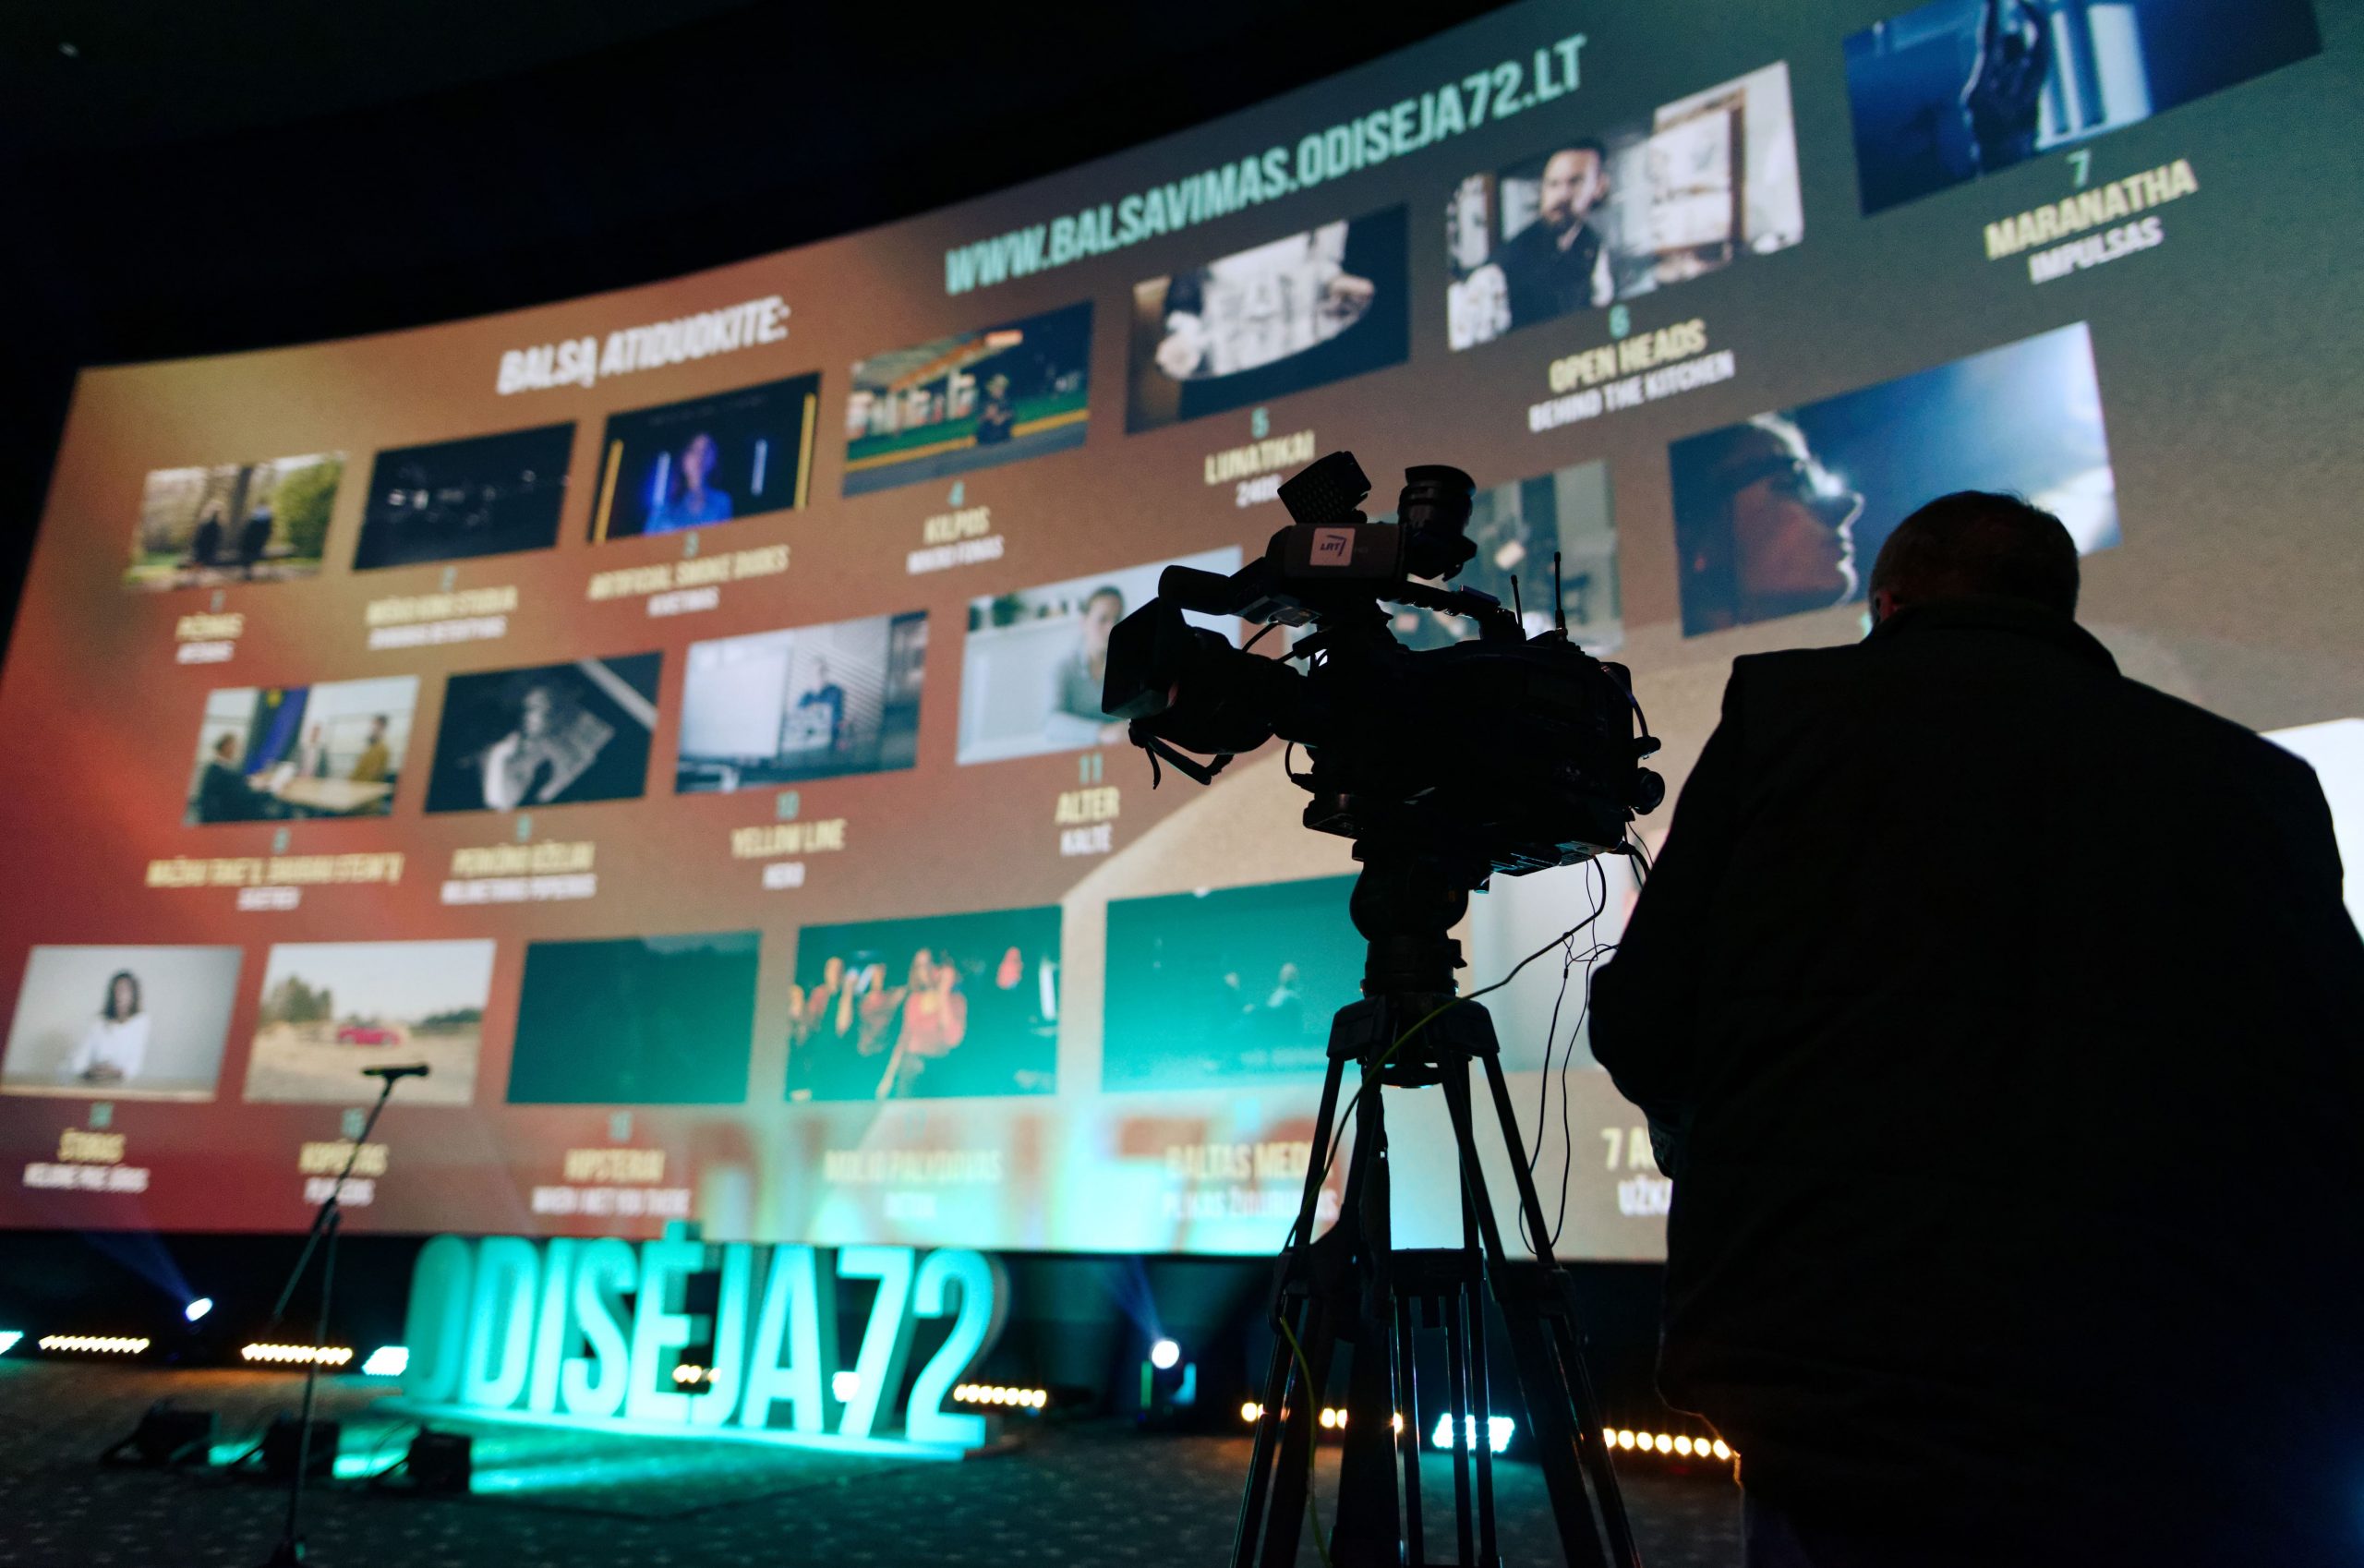 Filmų kūrimo festivalis ODISĖJA72 kviečia dalyvauti 2021 metų renginiuose